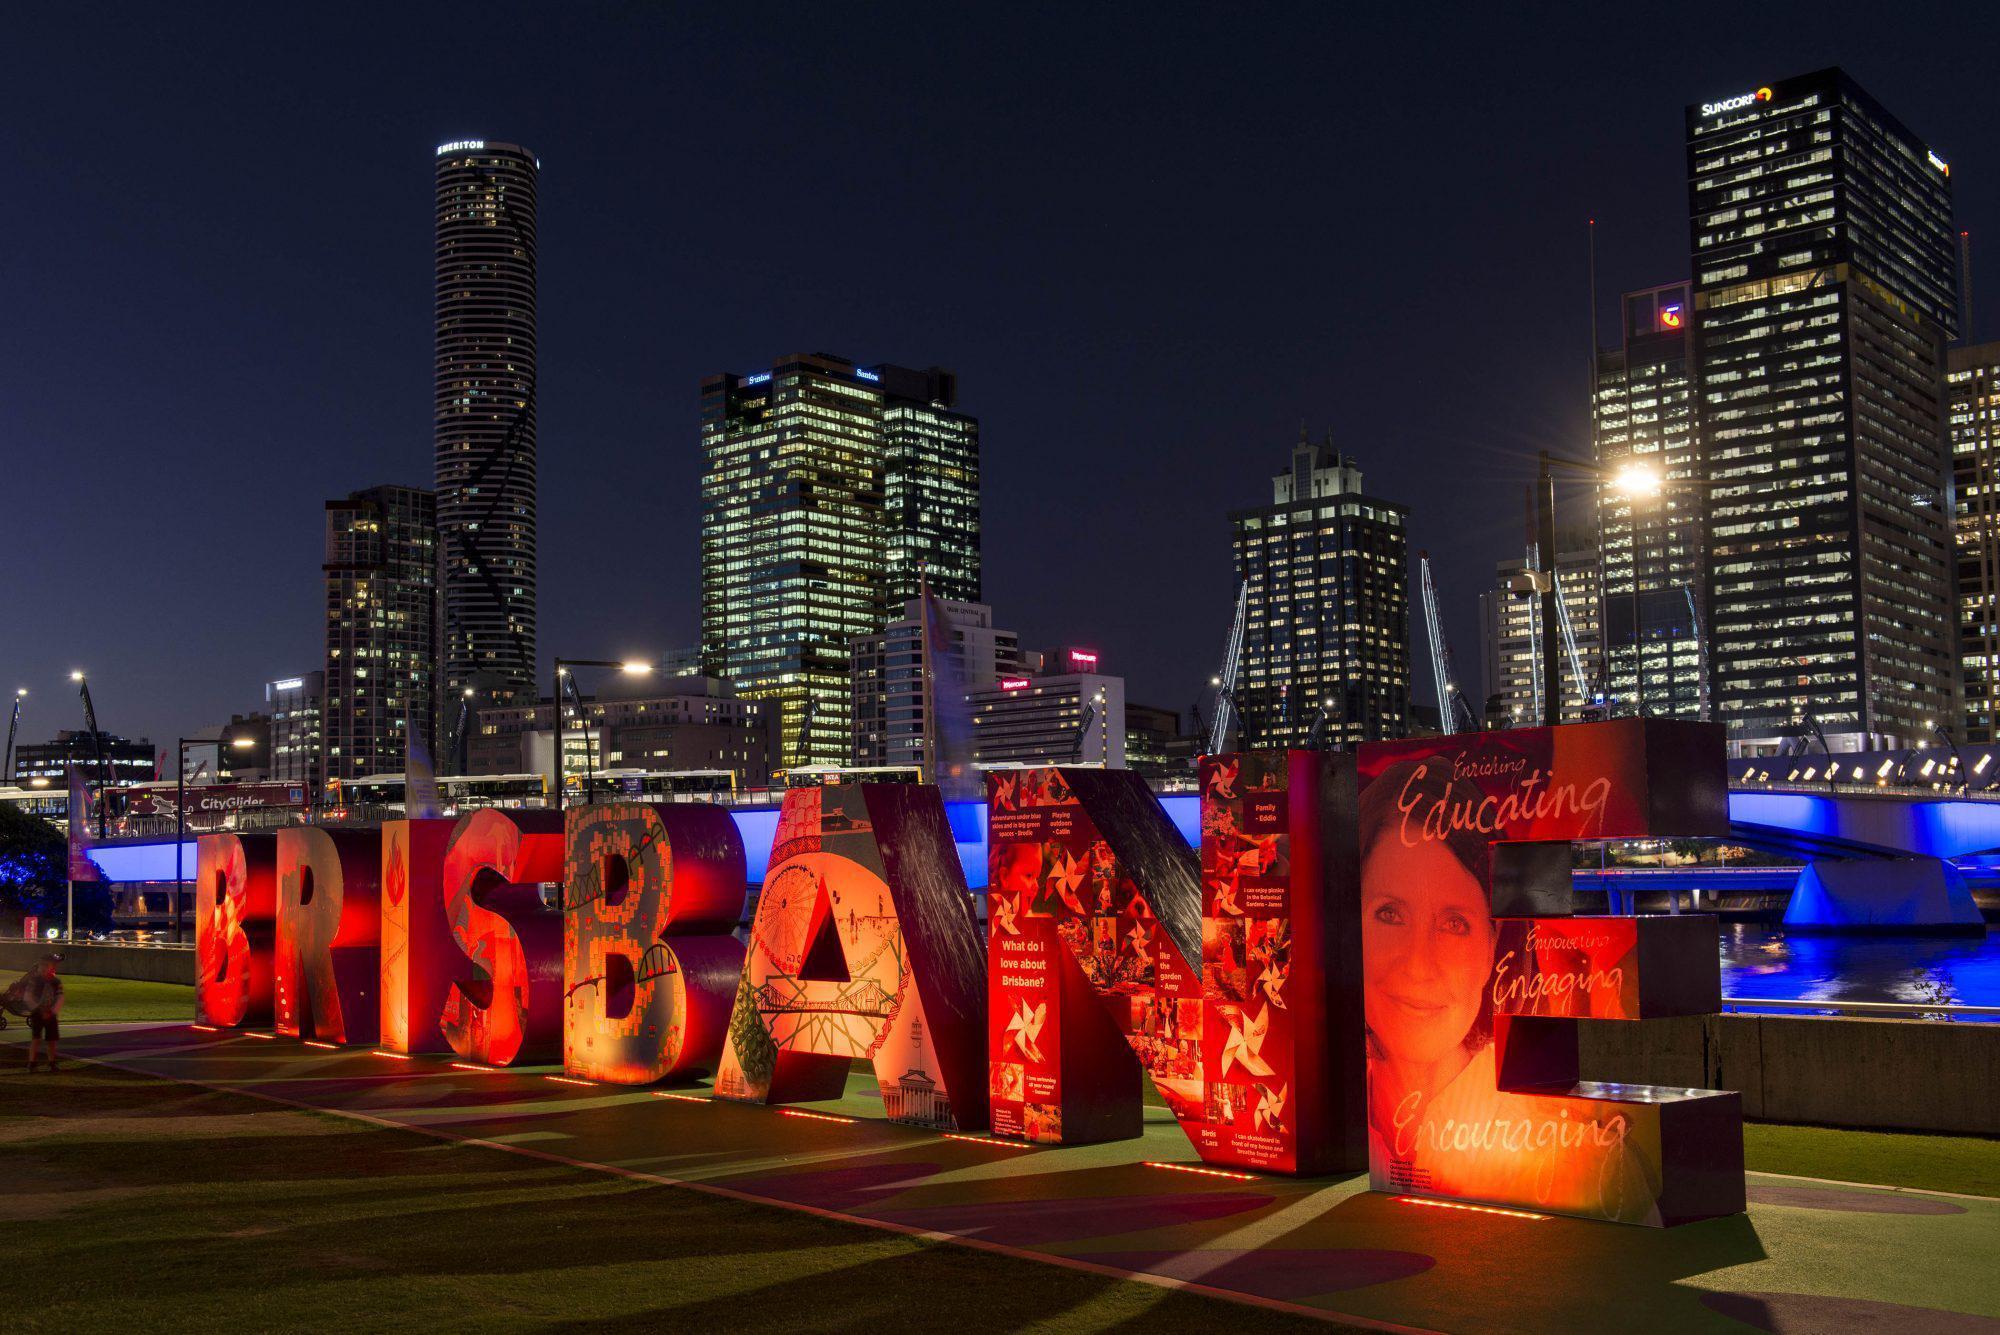 Brisbane nerede, nüfusu kaç ve hangi ülkede 2032 Olimpiyatları nerede ve ne zaman yapılacak